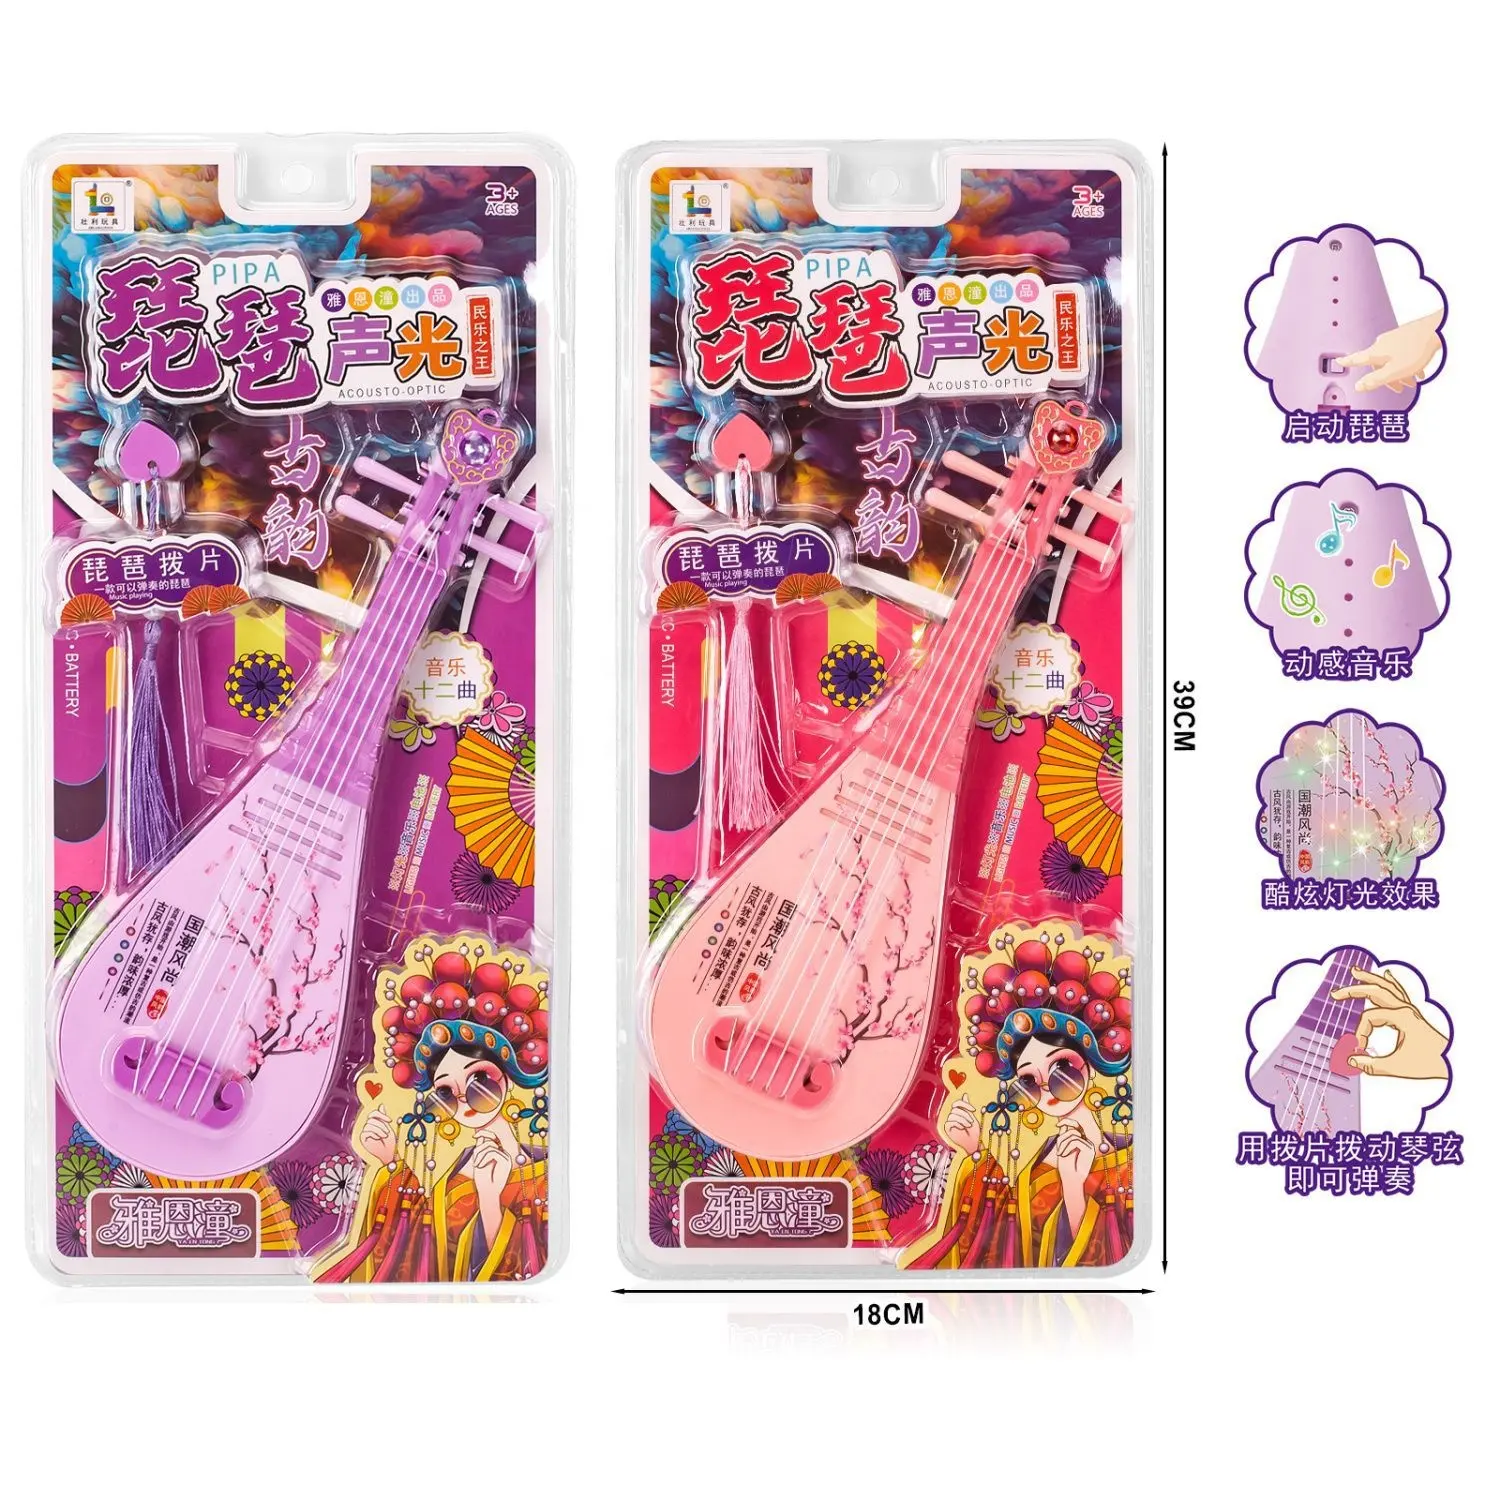 Bacchetta magica con musica di illuminazione giocattoli bacchetta magica regali principessa angelo giocattoli per bambini ragazza finge di essere una farfalla musica